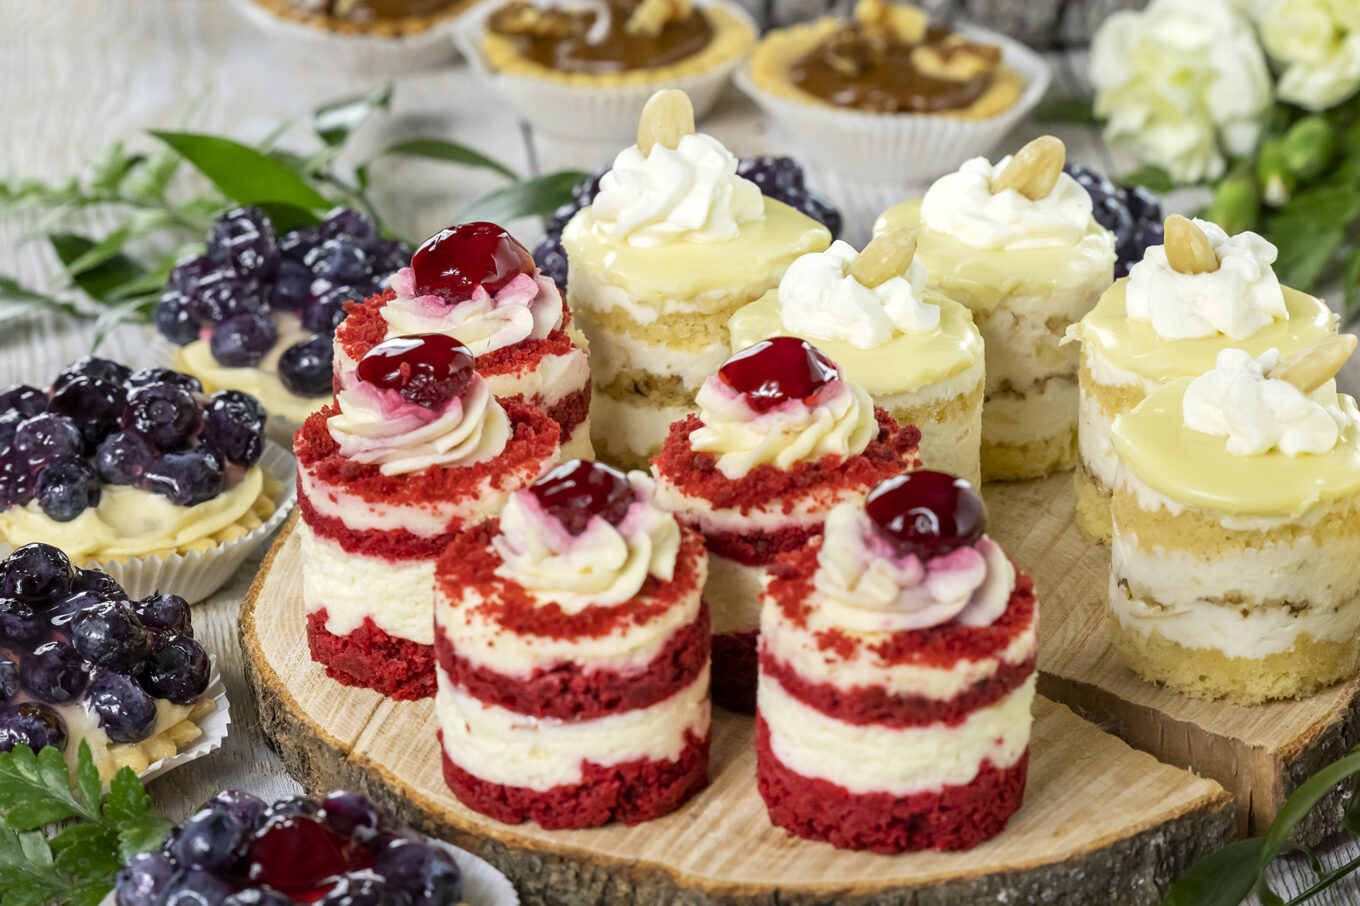 nano dezerty dorty Cukrárna Jacek Placek je synonymem chuti domácích dortů z přírodních produktů.